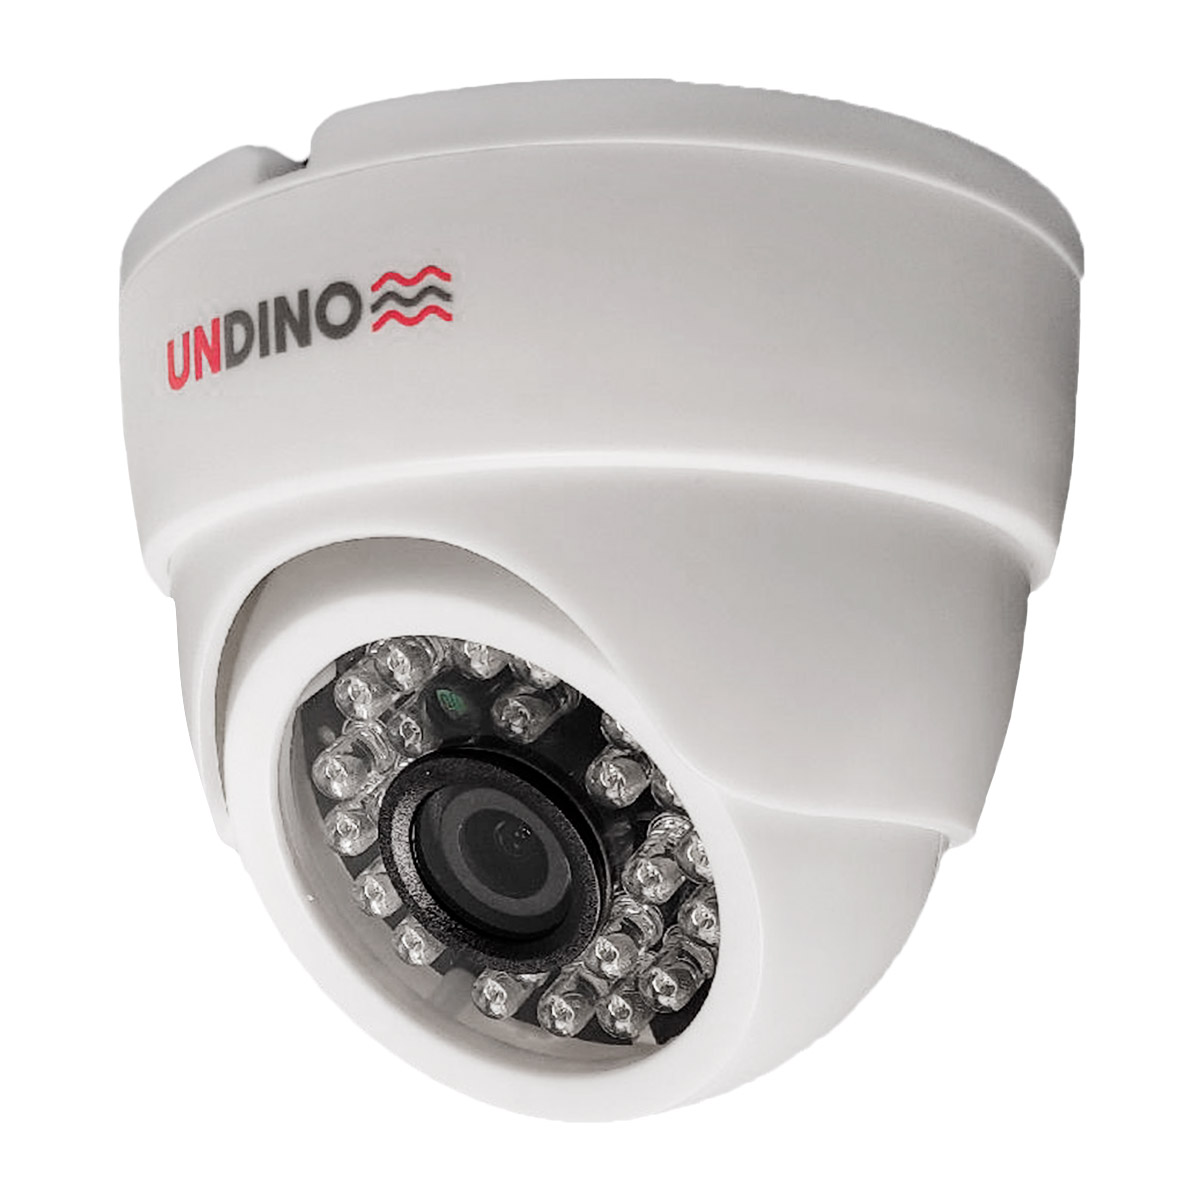 Купольная камера видеонаблюдения IP 5Мп Undino UD-ED05IP цифровая с POE питанием камера видеонаблюдения xmeye купольная мультиформатная 350ahd5pw 2 8